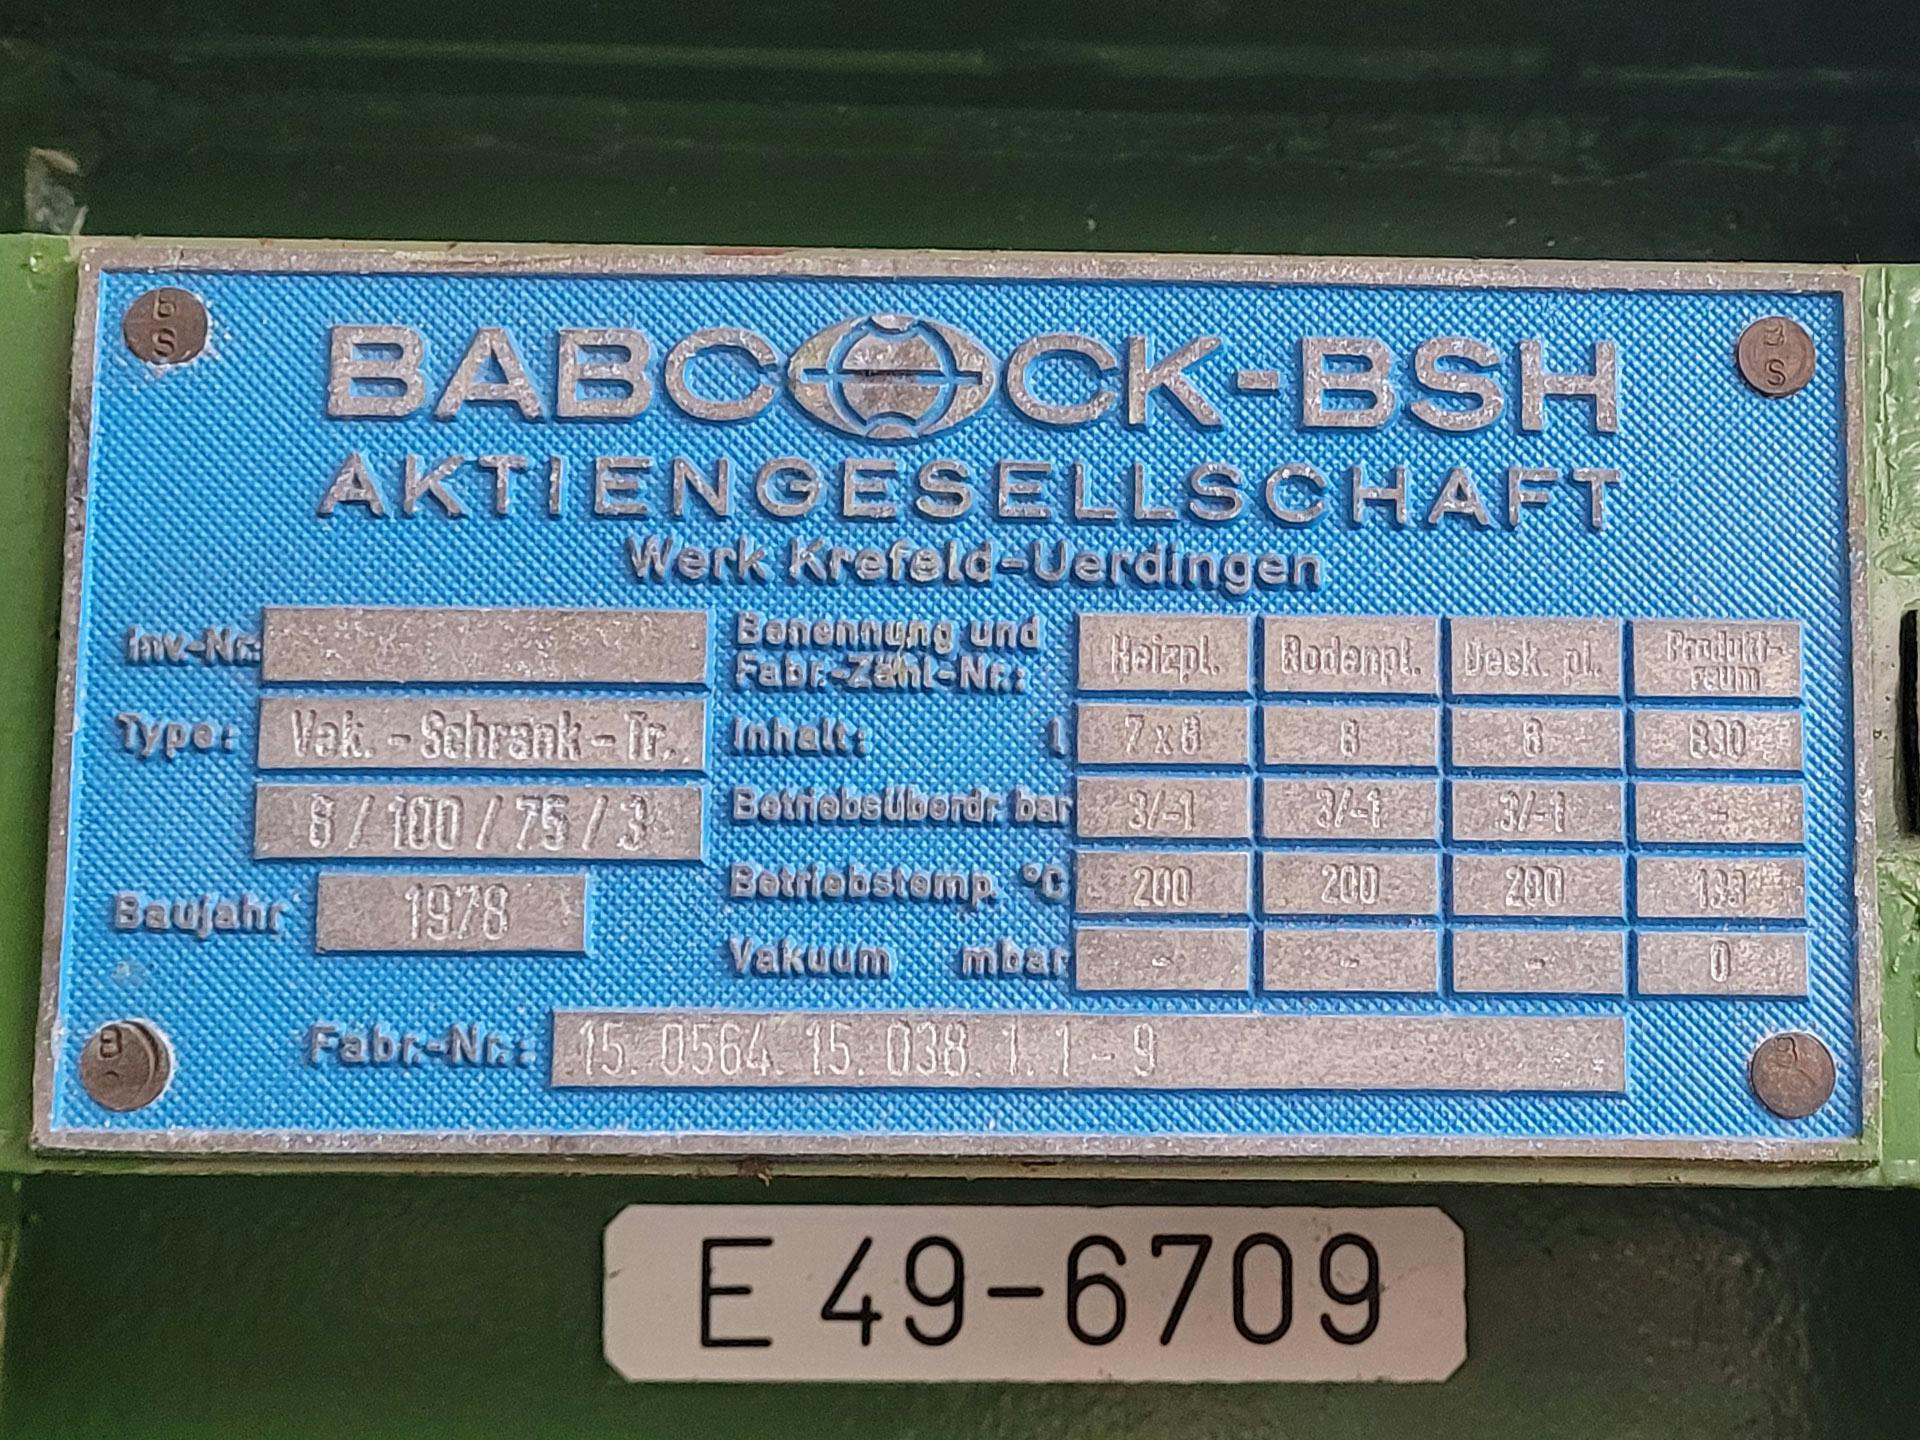 Babcock-BSH 8/100/75-3 - Séchoir à plateaux - image 4